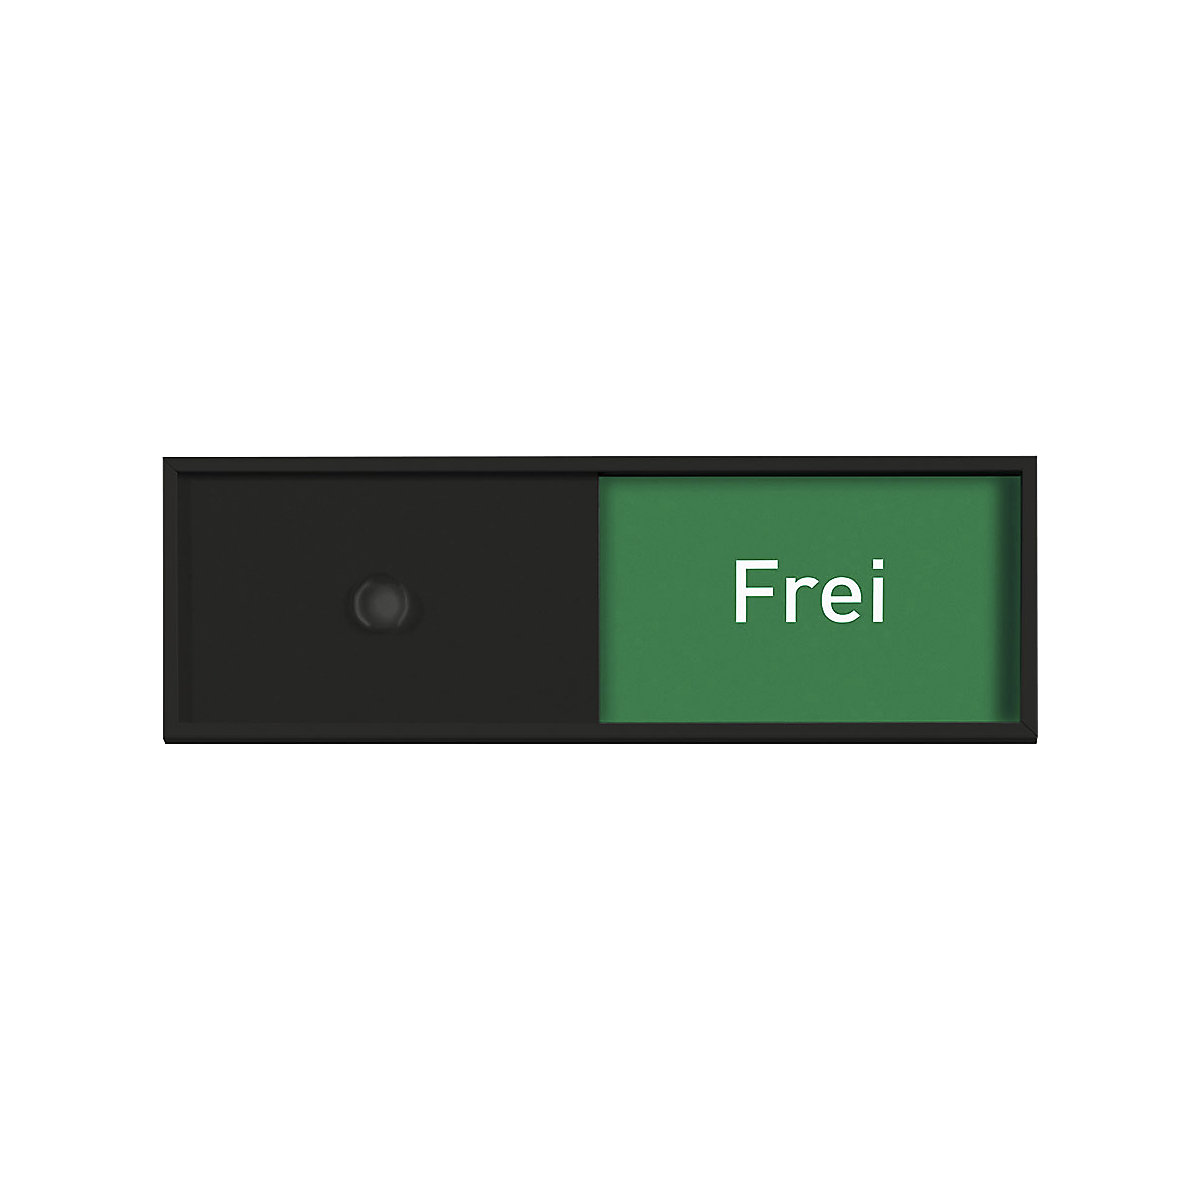 Frei-/Belegt-Anzeige, in 5 Sprachen, BxHxT 150,5 x 50,5 x 6 mm, schwarz-3